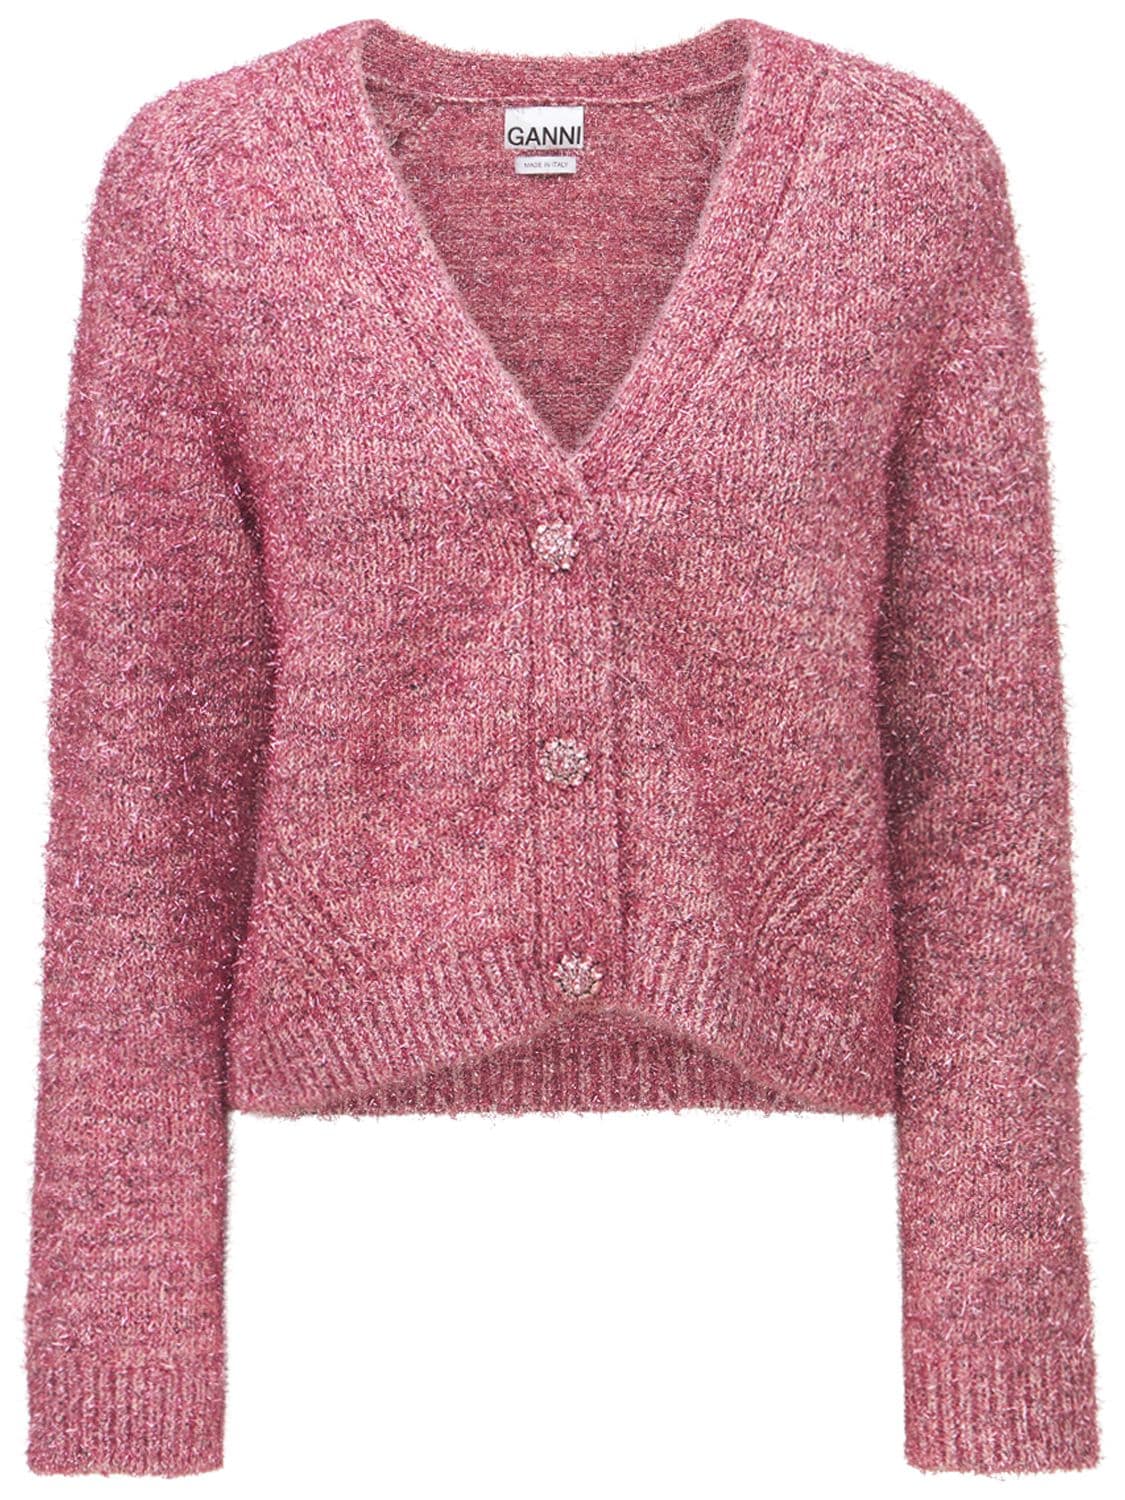 GANNI - Glitter knit embellished cardigan - Pink | Luisaviaroma